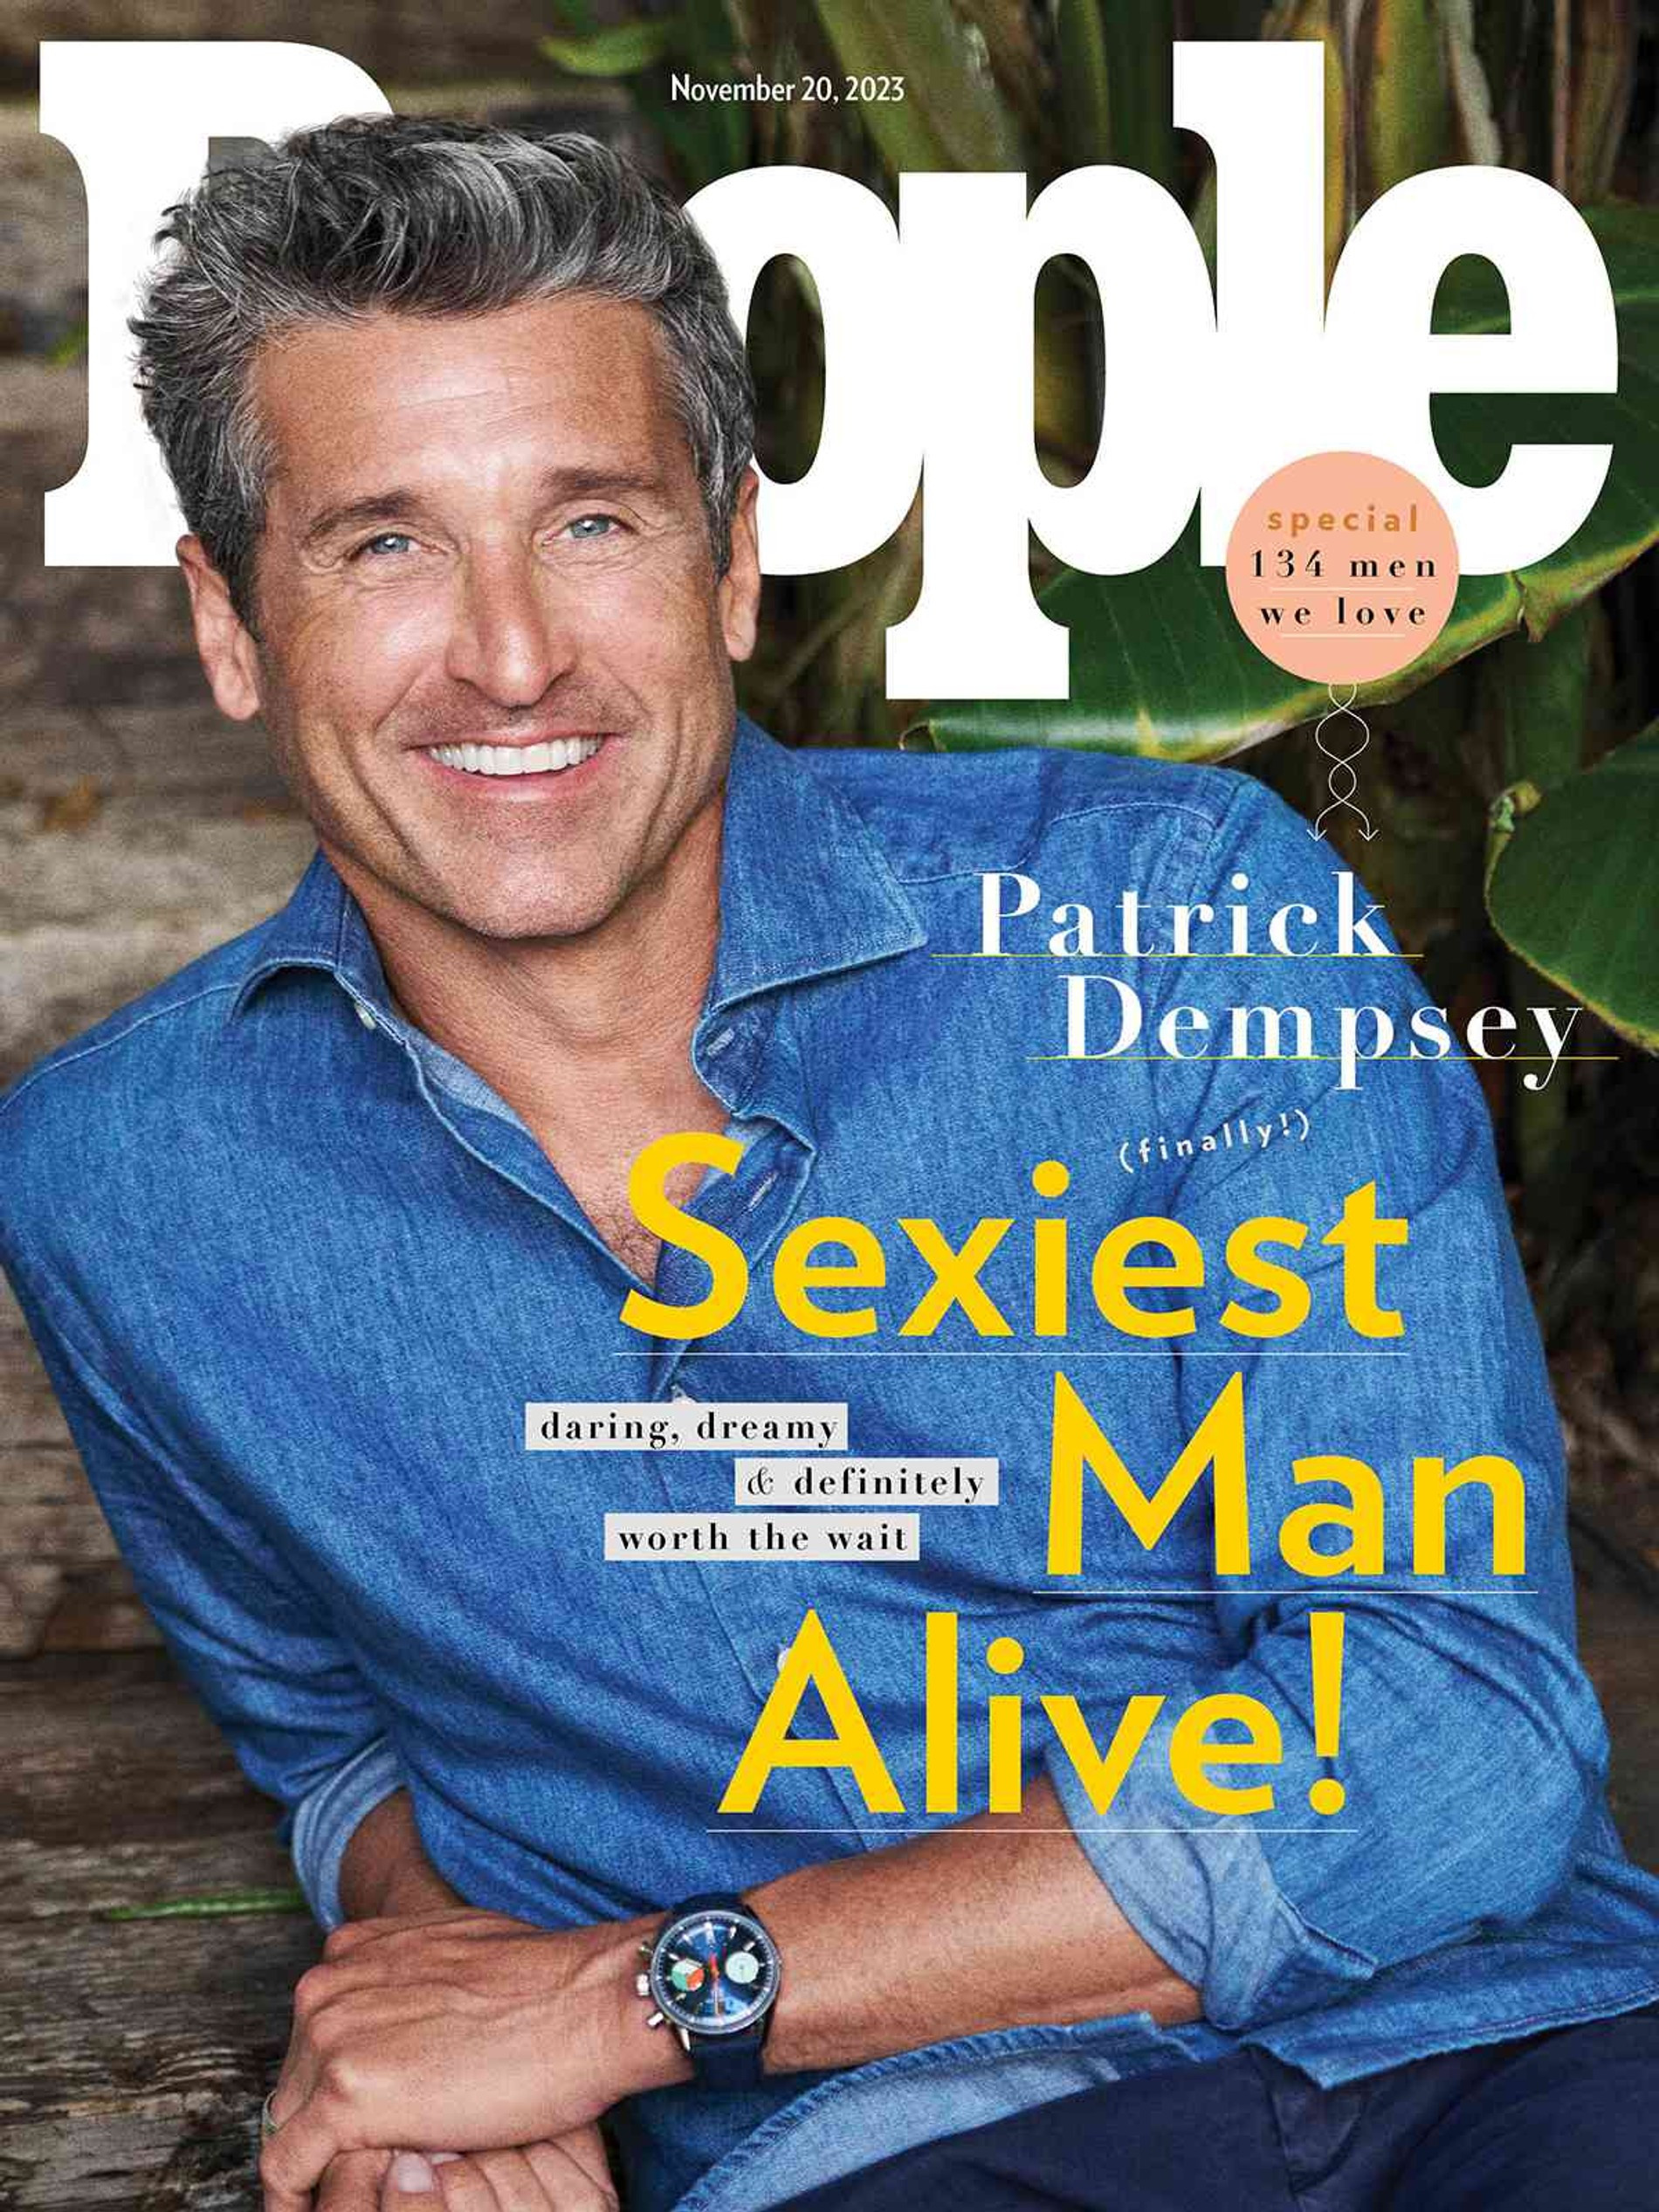 Самый сексуальный мужчина 2023 года Патрик Демпси на обложке People. Фото: People